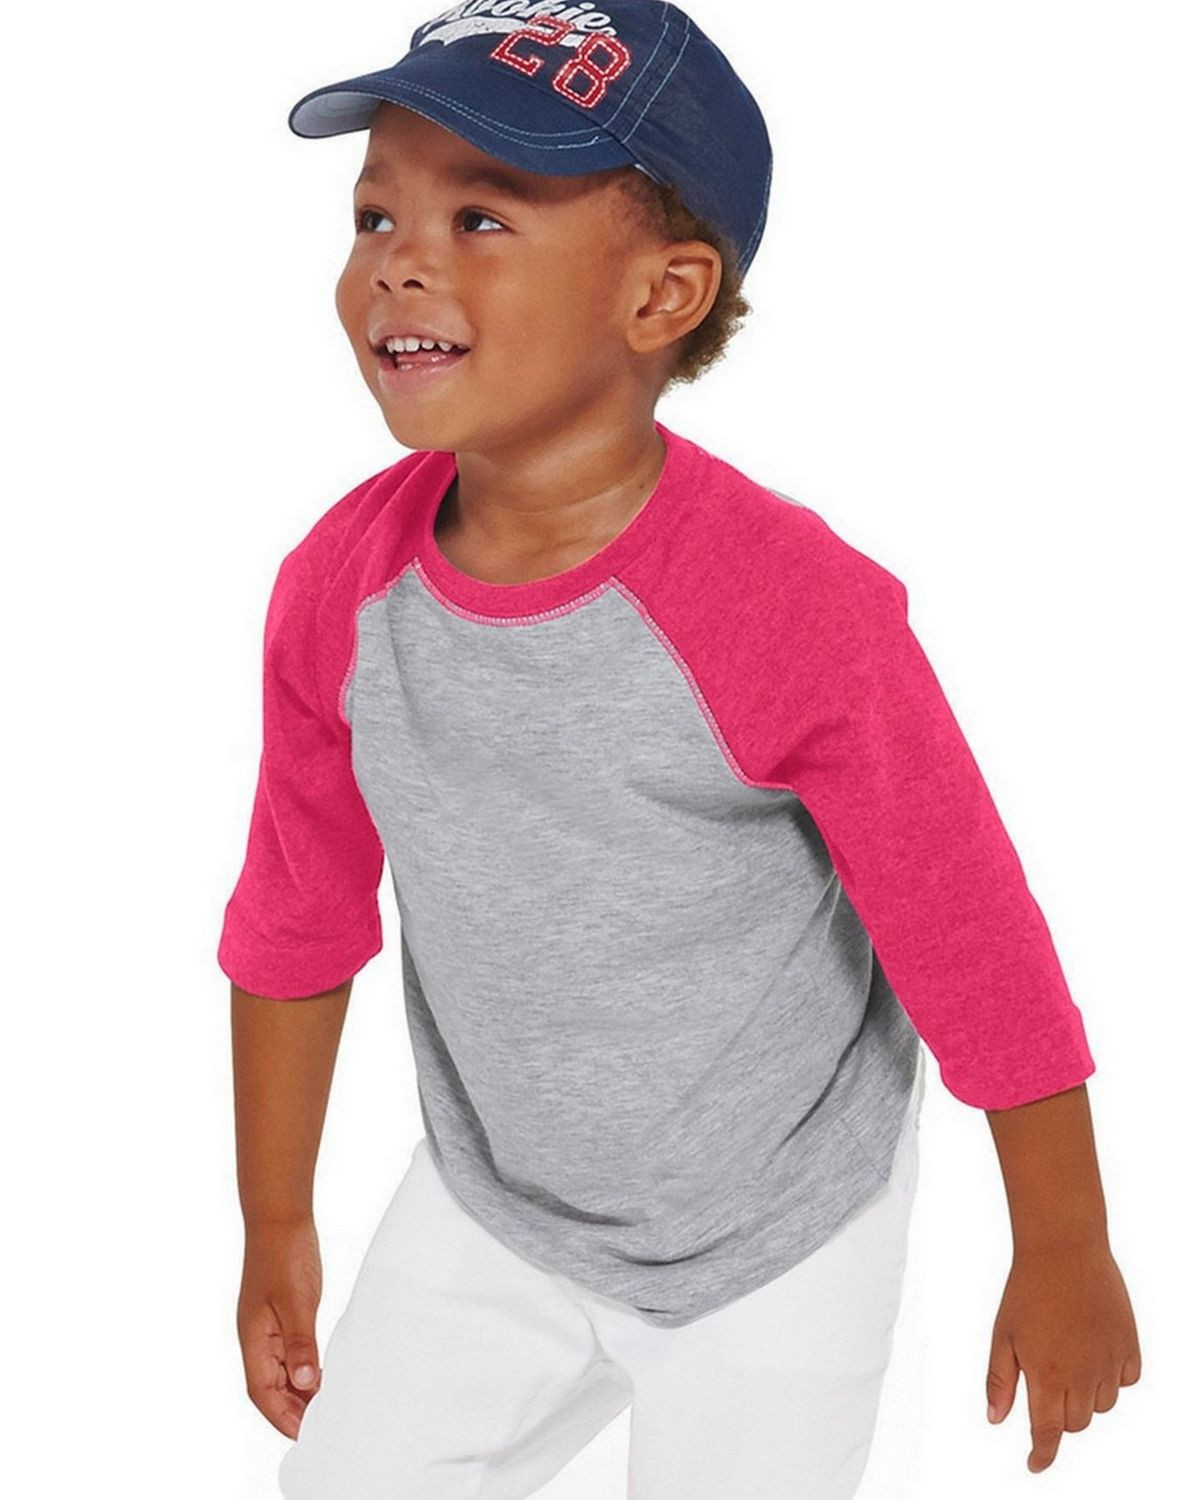 Rabbit Skins 3330 Toddler Vintage Fine Jersey 3/4-Sleeve Baseball T-Shirt - Vintage Heather/Vintage Hot Pink - 4T #vintage